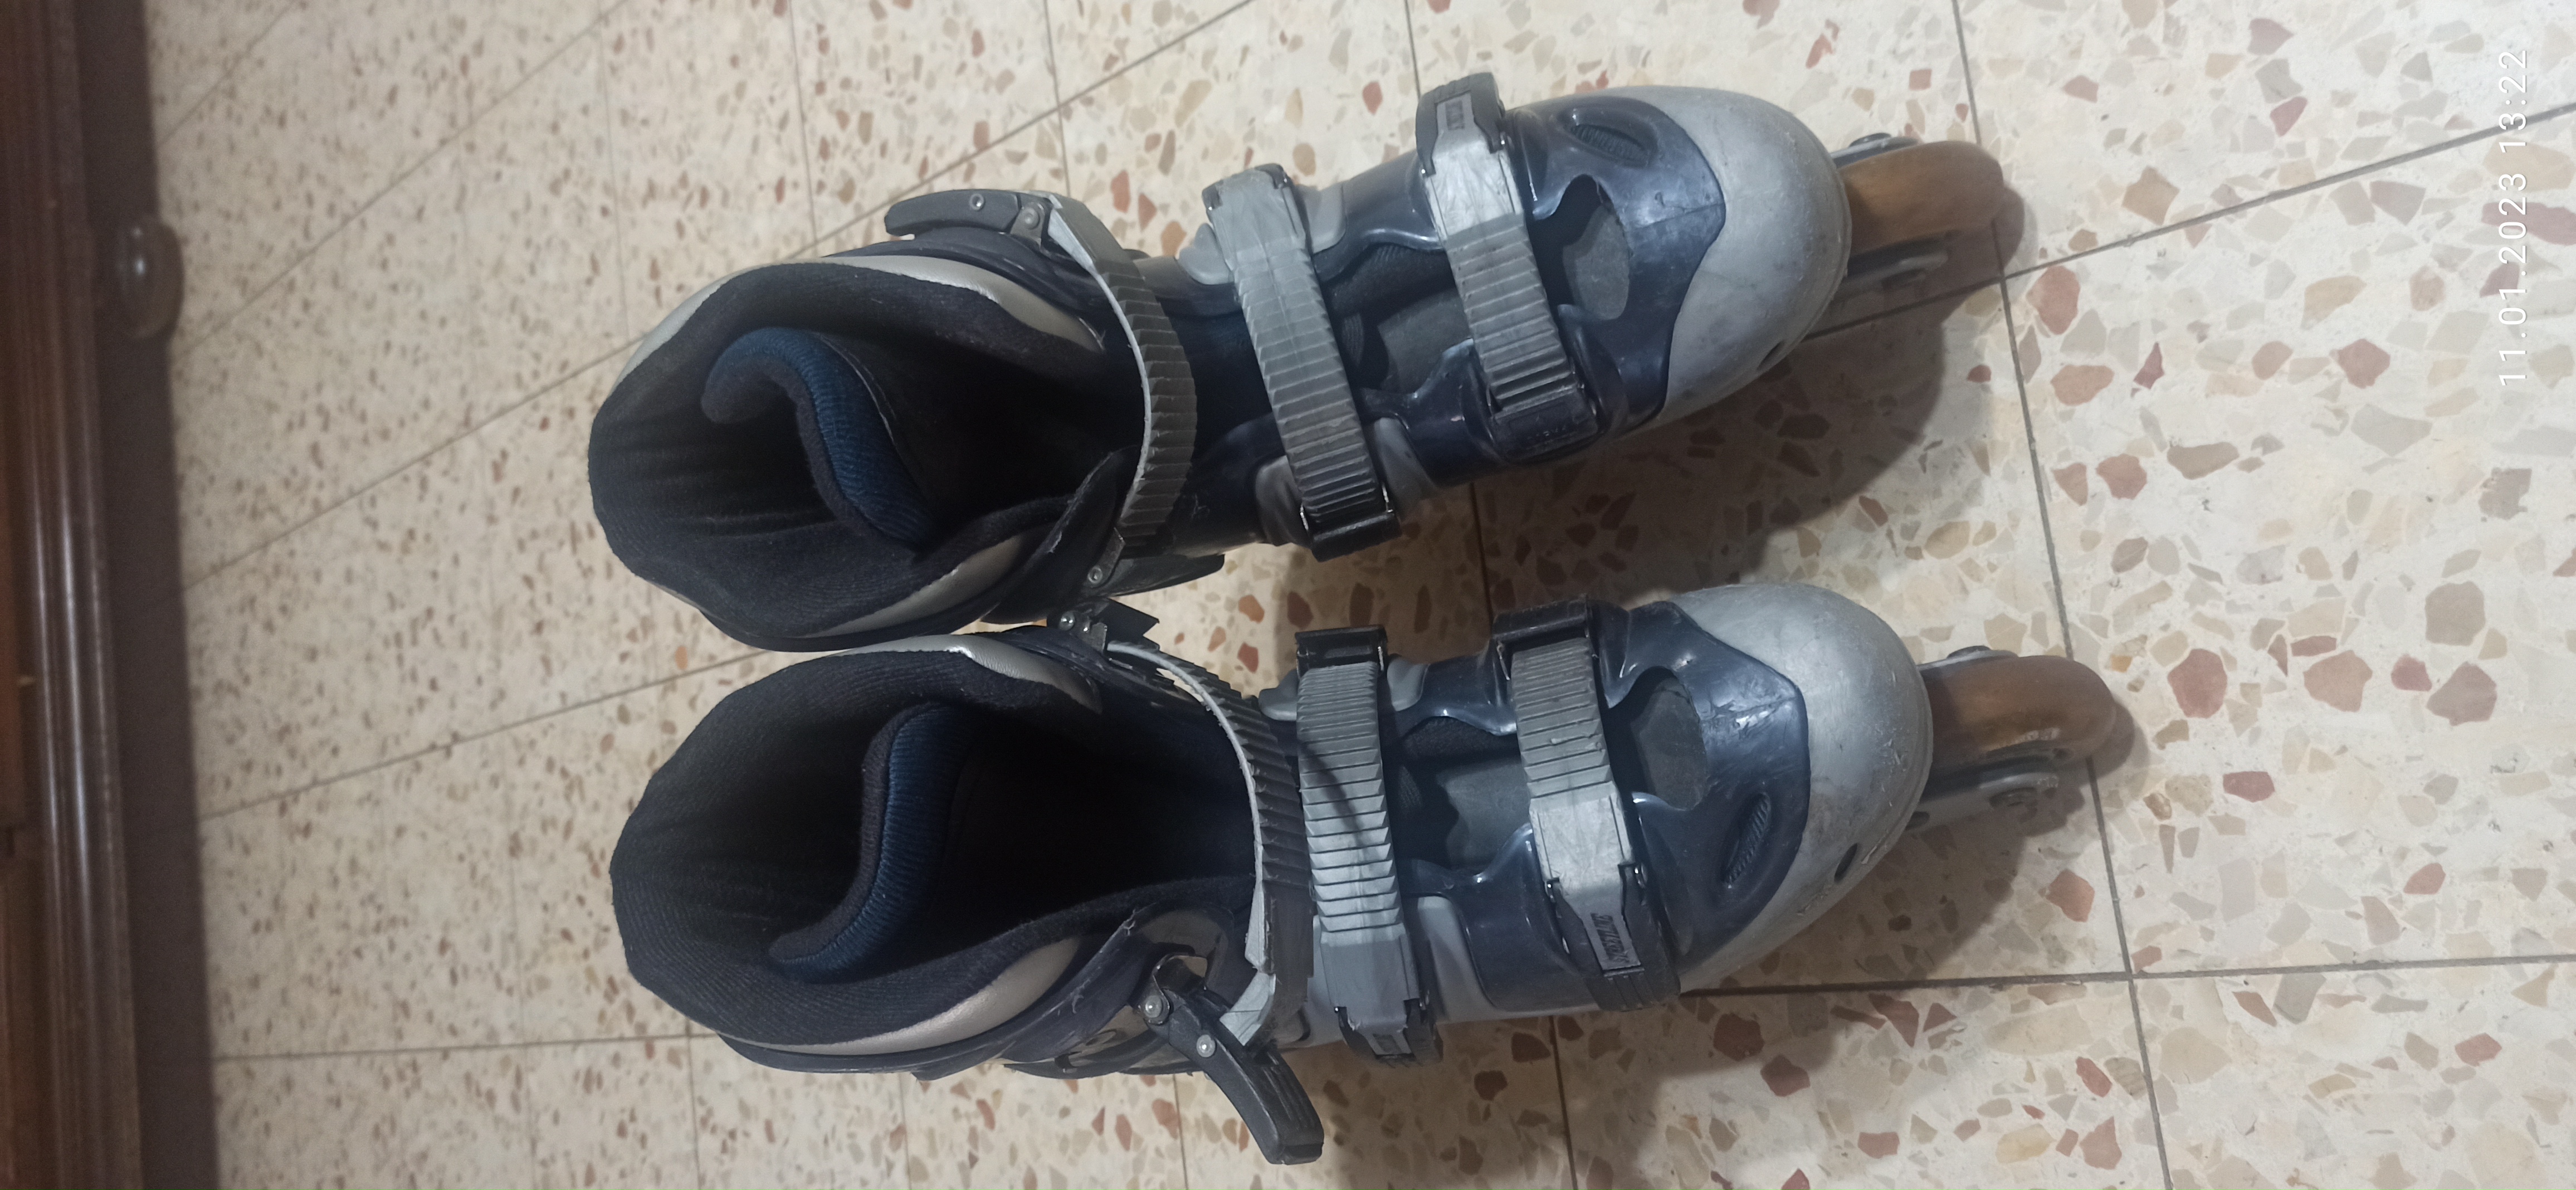 תמונה 1 ,נעלי רולרבליידס  37 למכירה ביבנה ציוד ספורט  ביגוד ונעליים מקצועיות